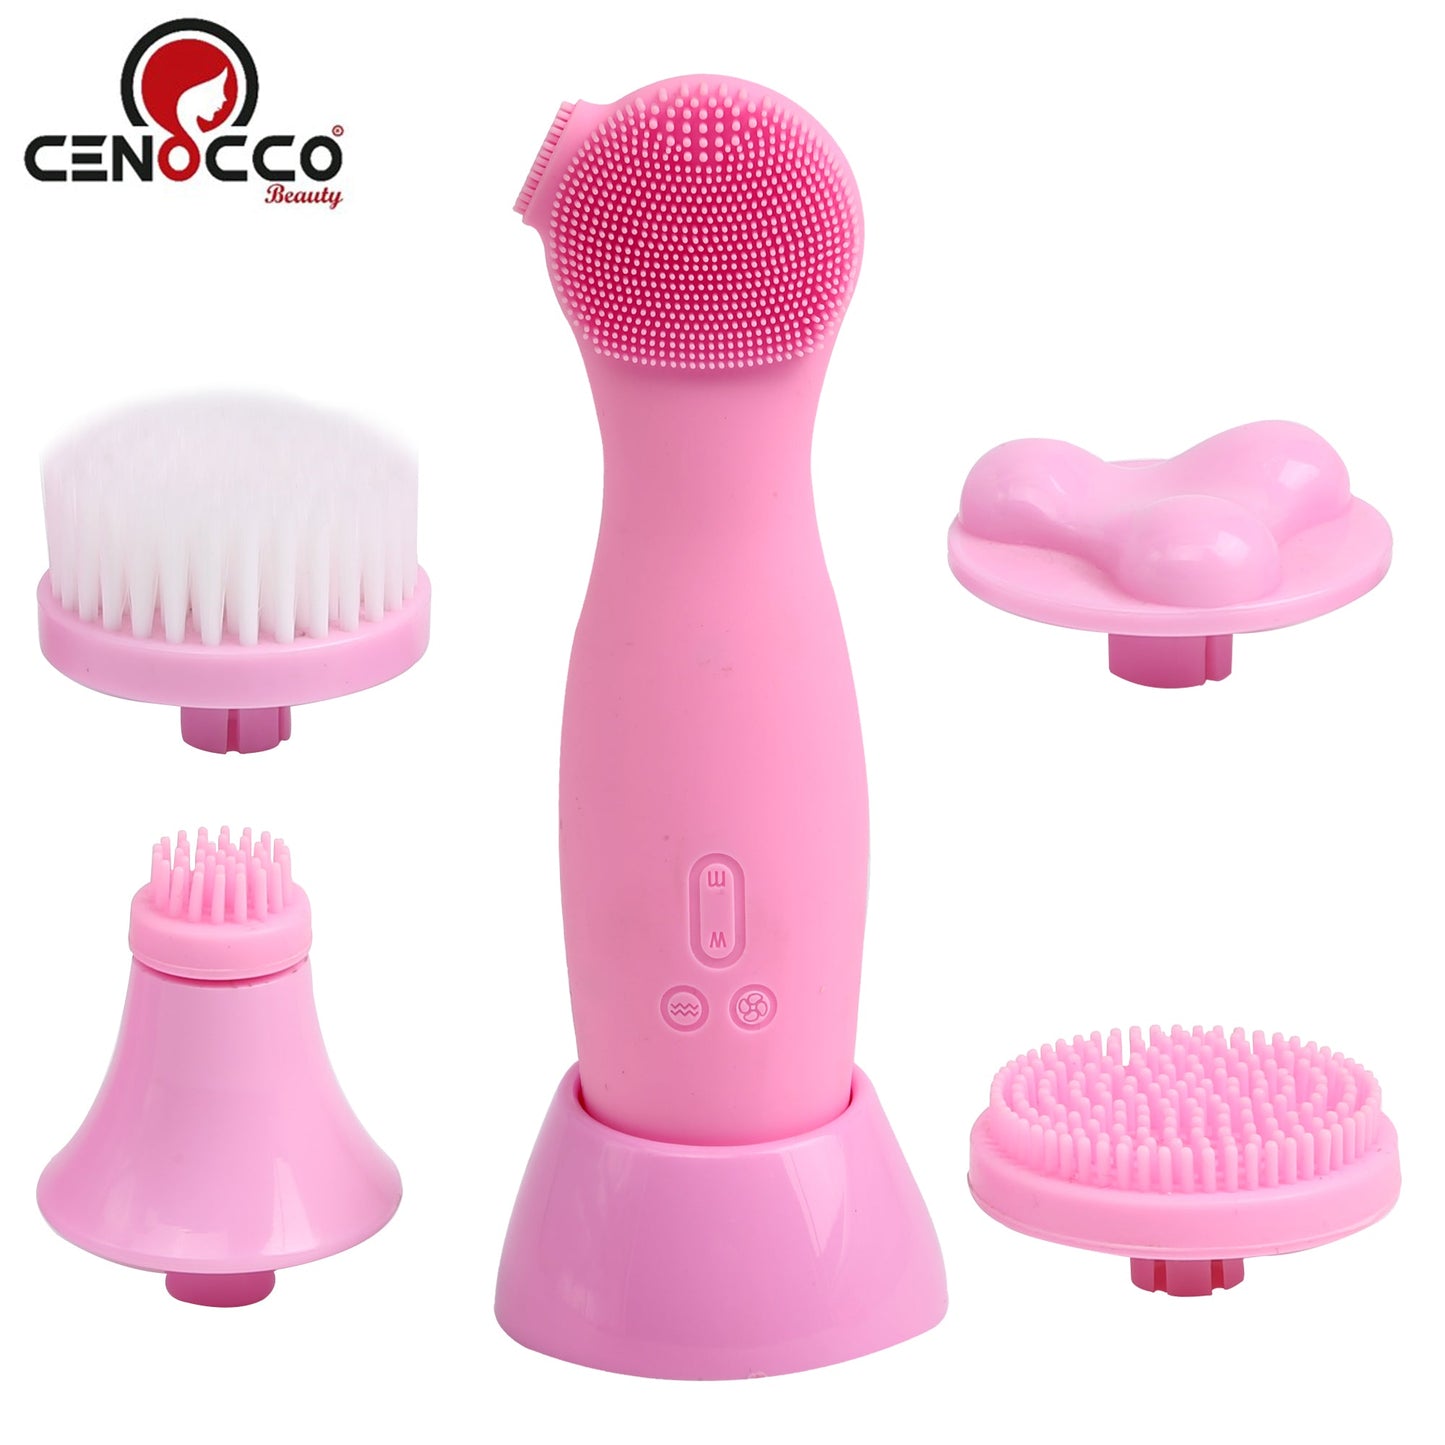 Cenocco Beauty CC-9084: elektrische siliconen gezichtsreiniger - Bivakshop